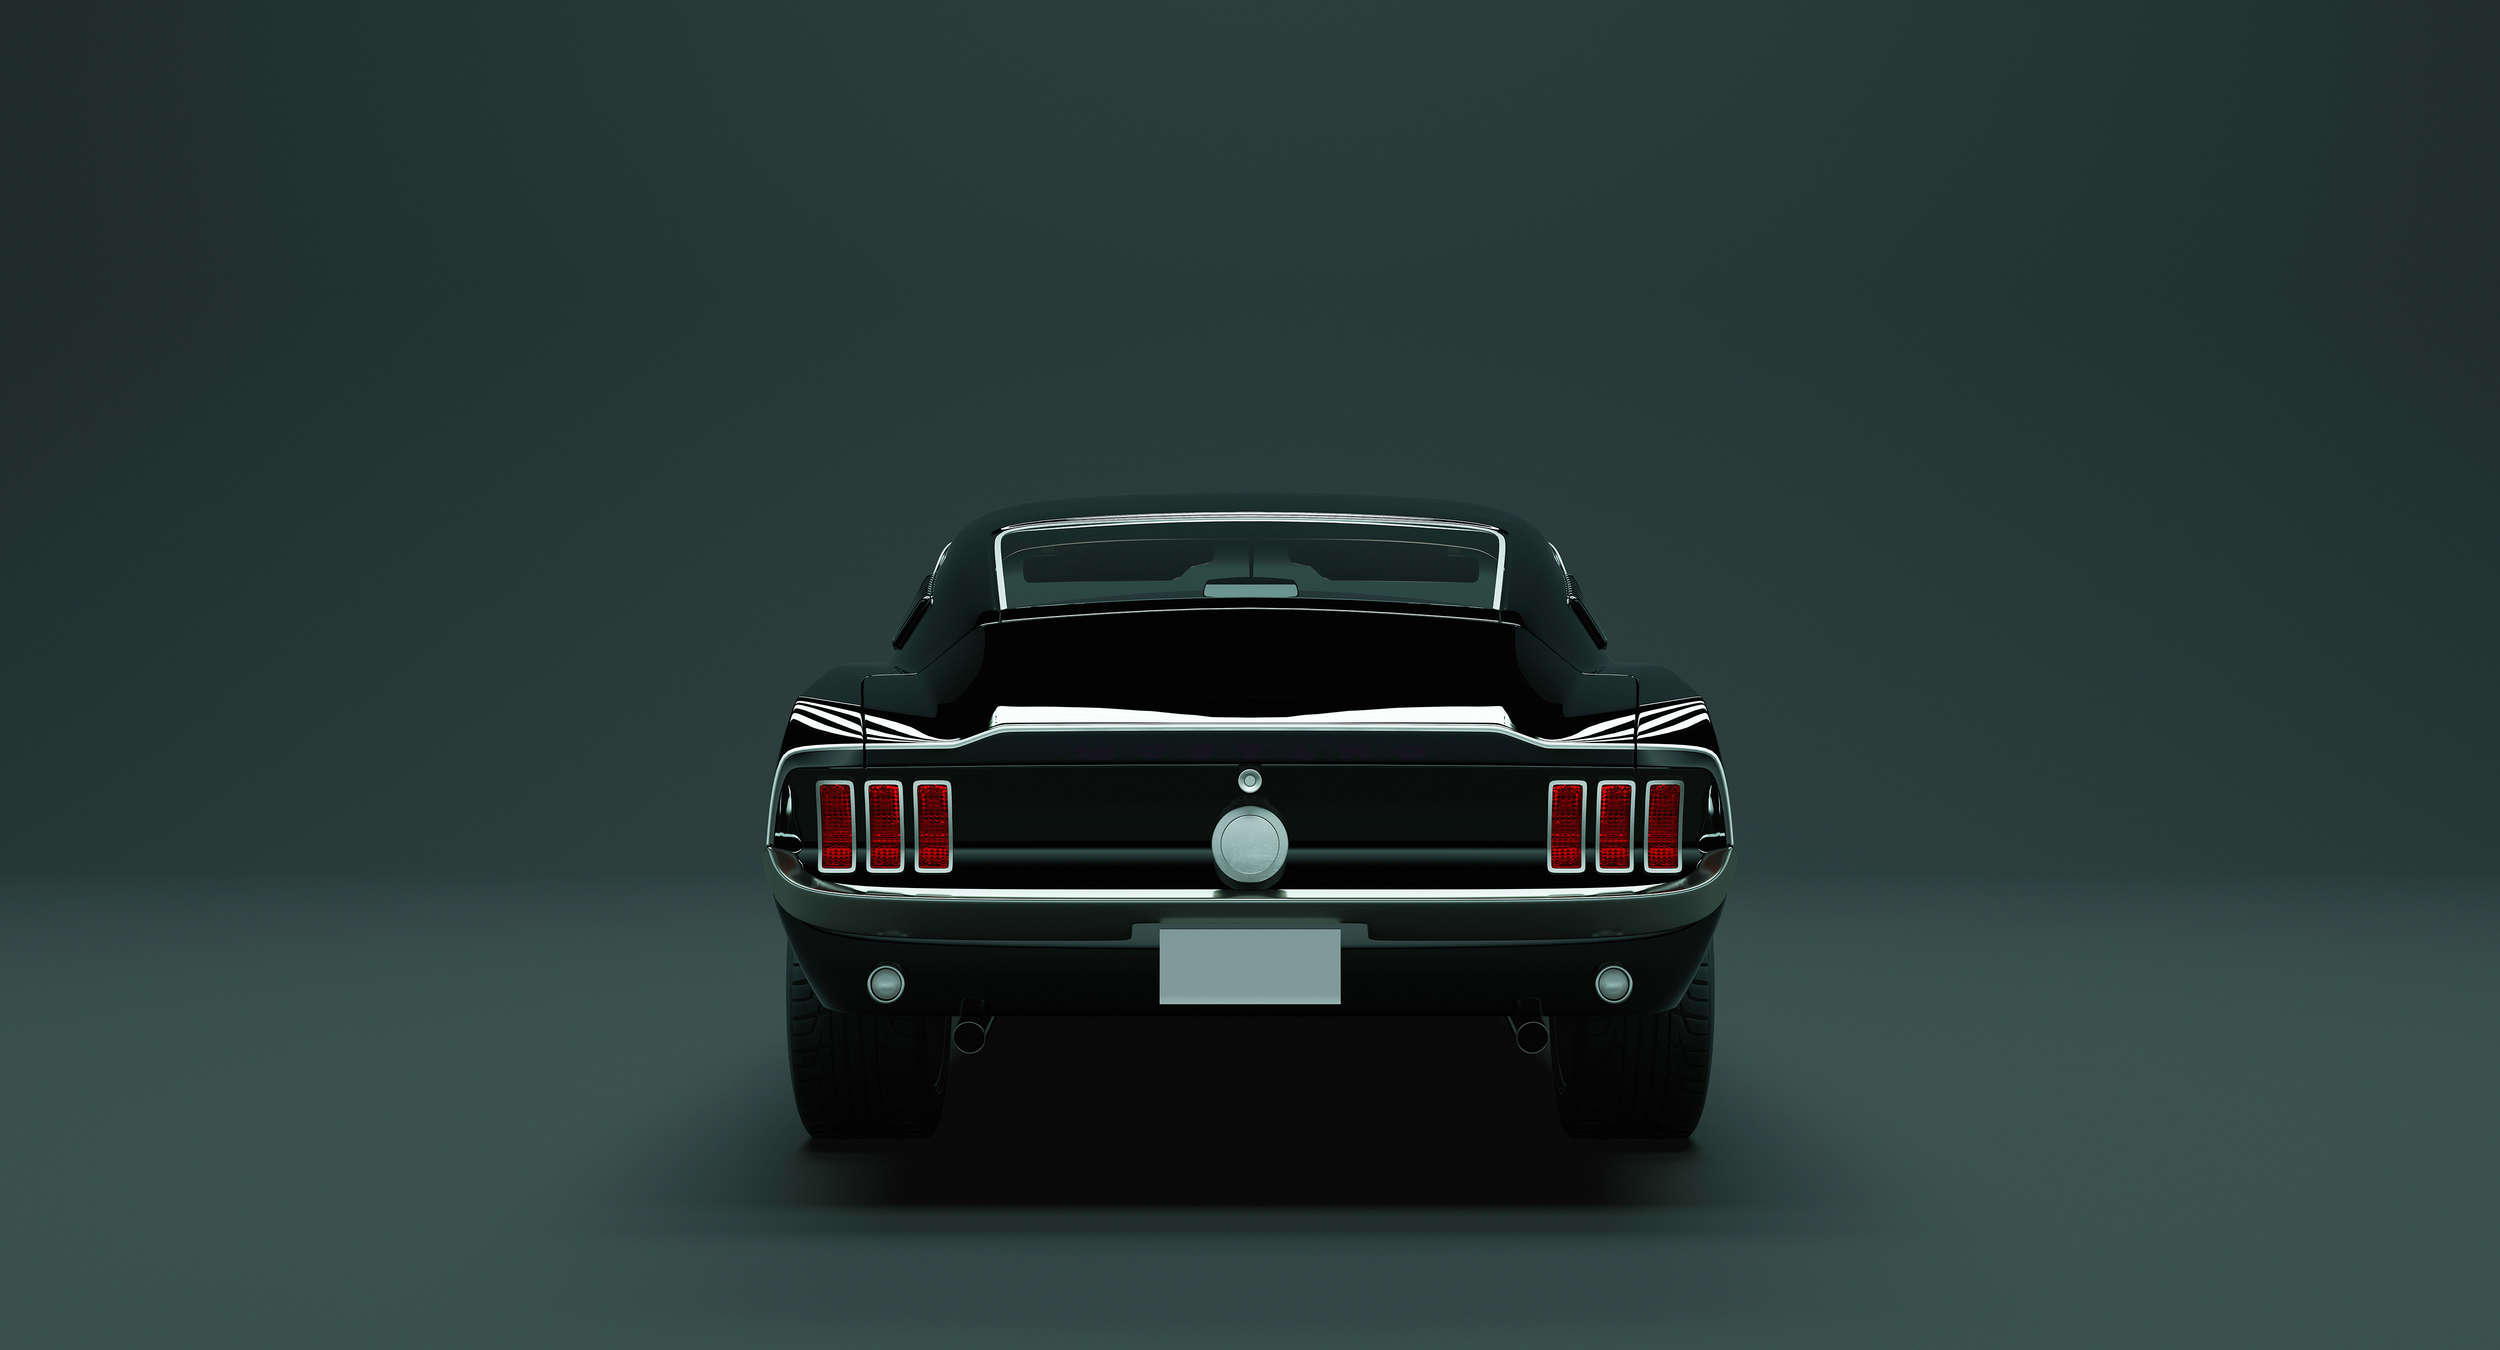             Papel pintado Mustang 3 - American Muscle Car - Azul, Negro | Tejido sin tejer texturado
        